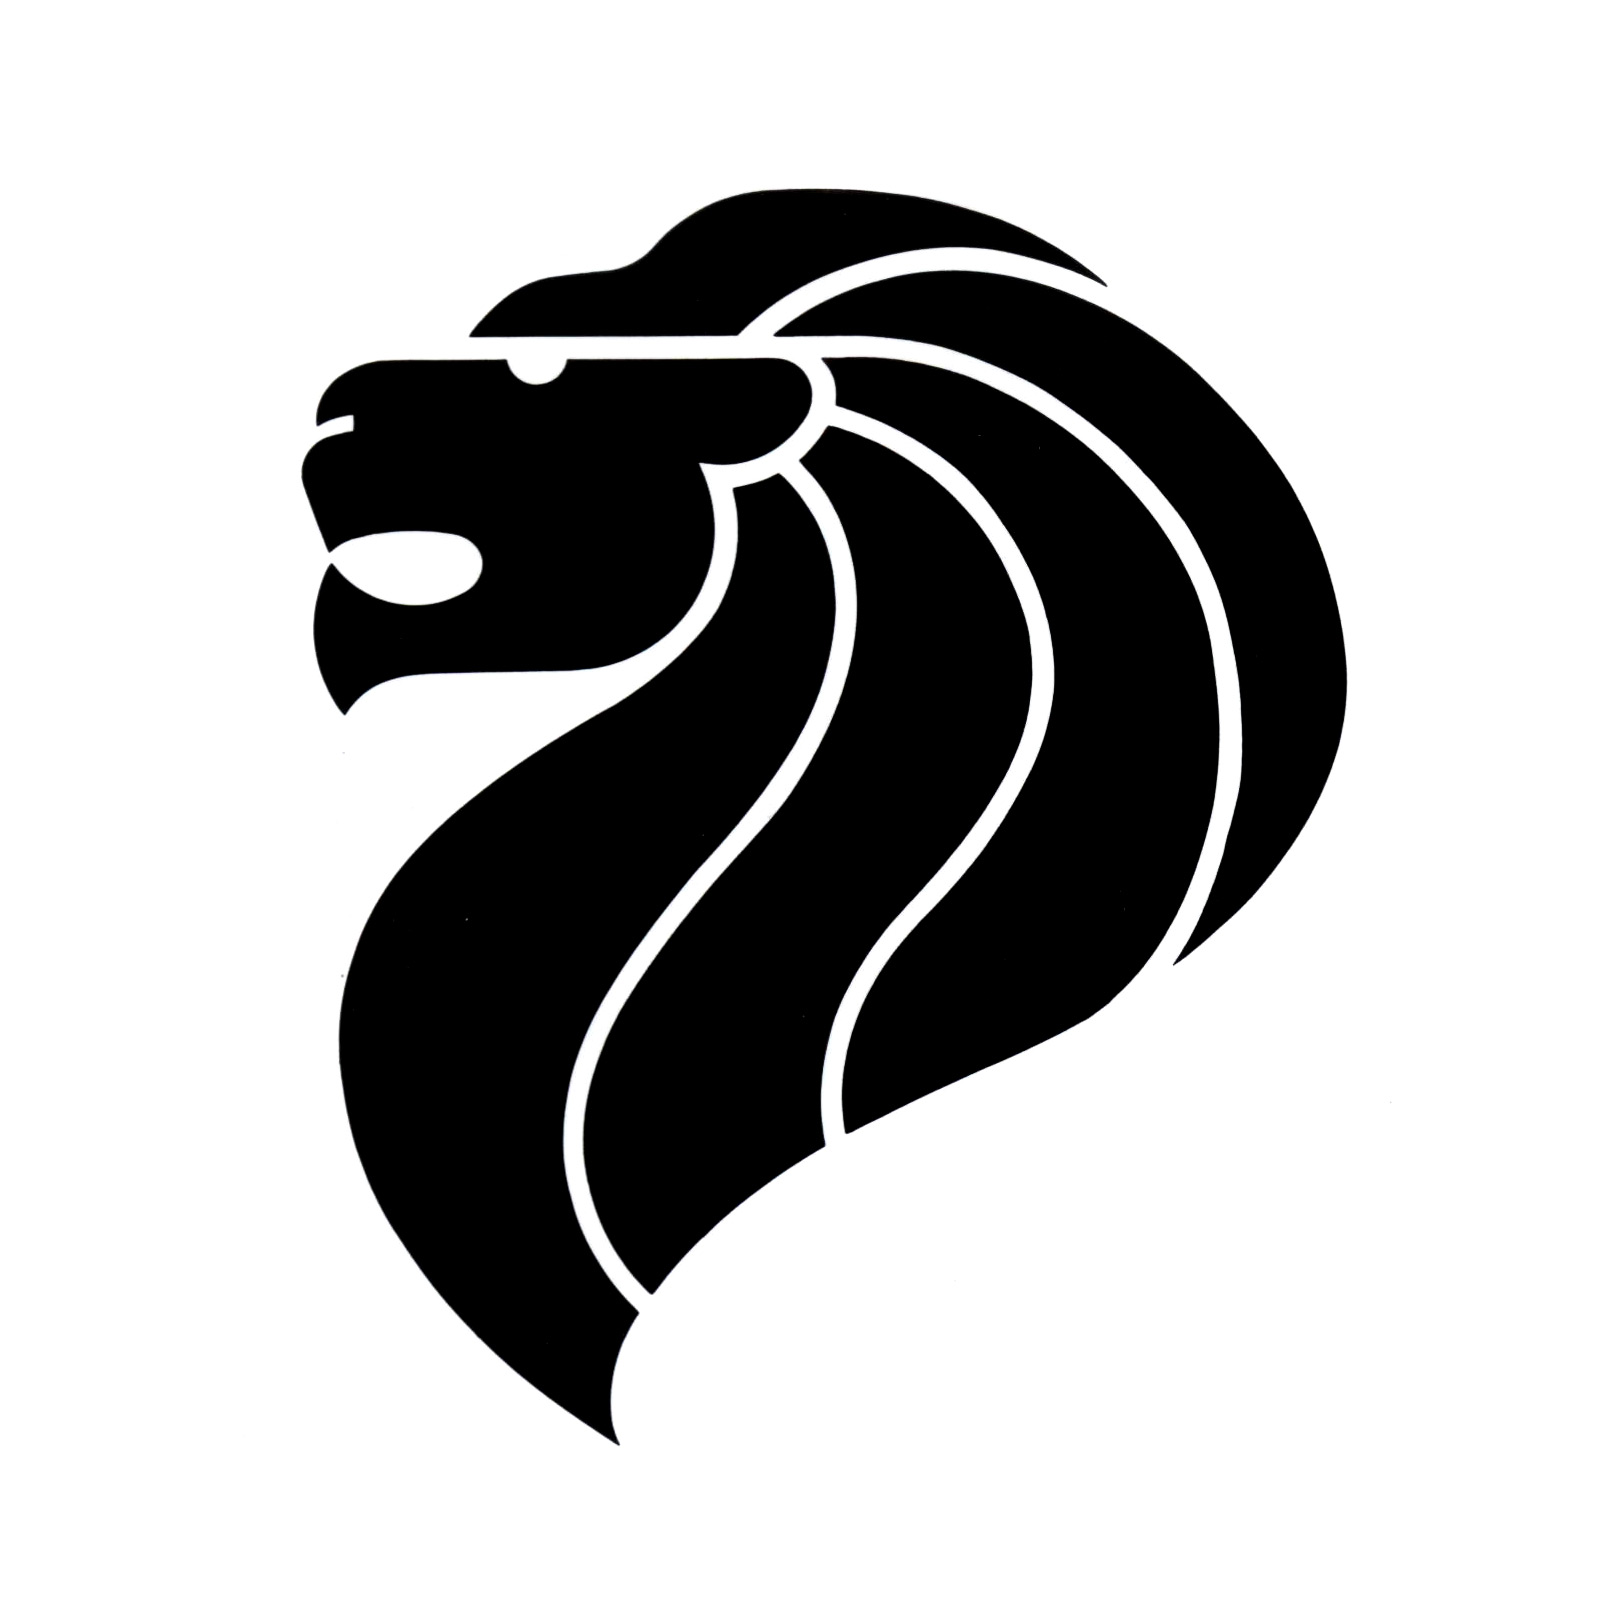 ライオンヘッドは何を象徴していますか？